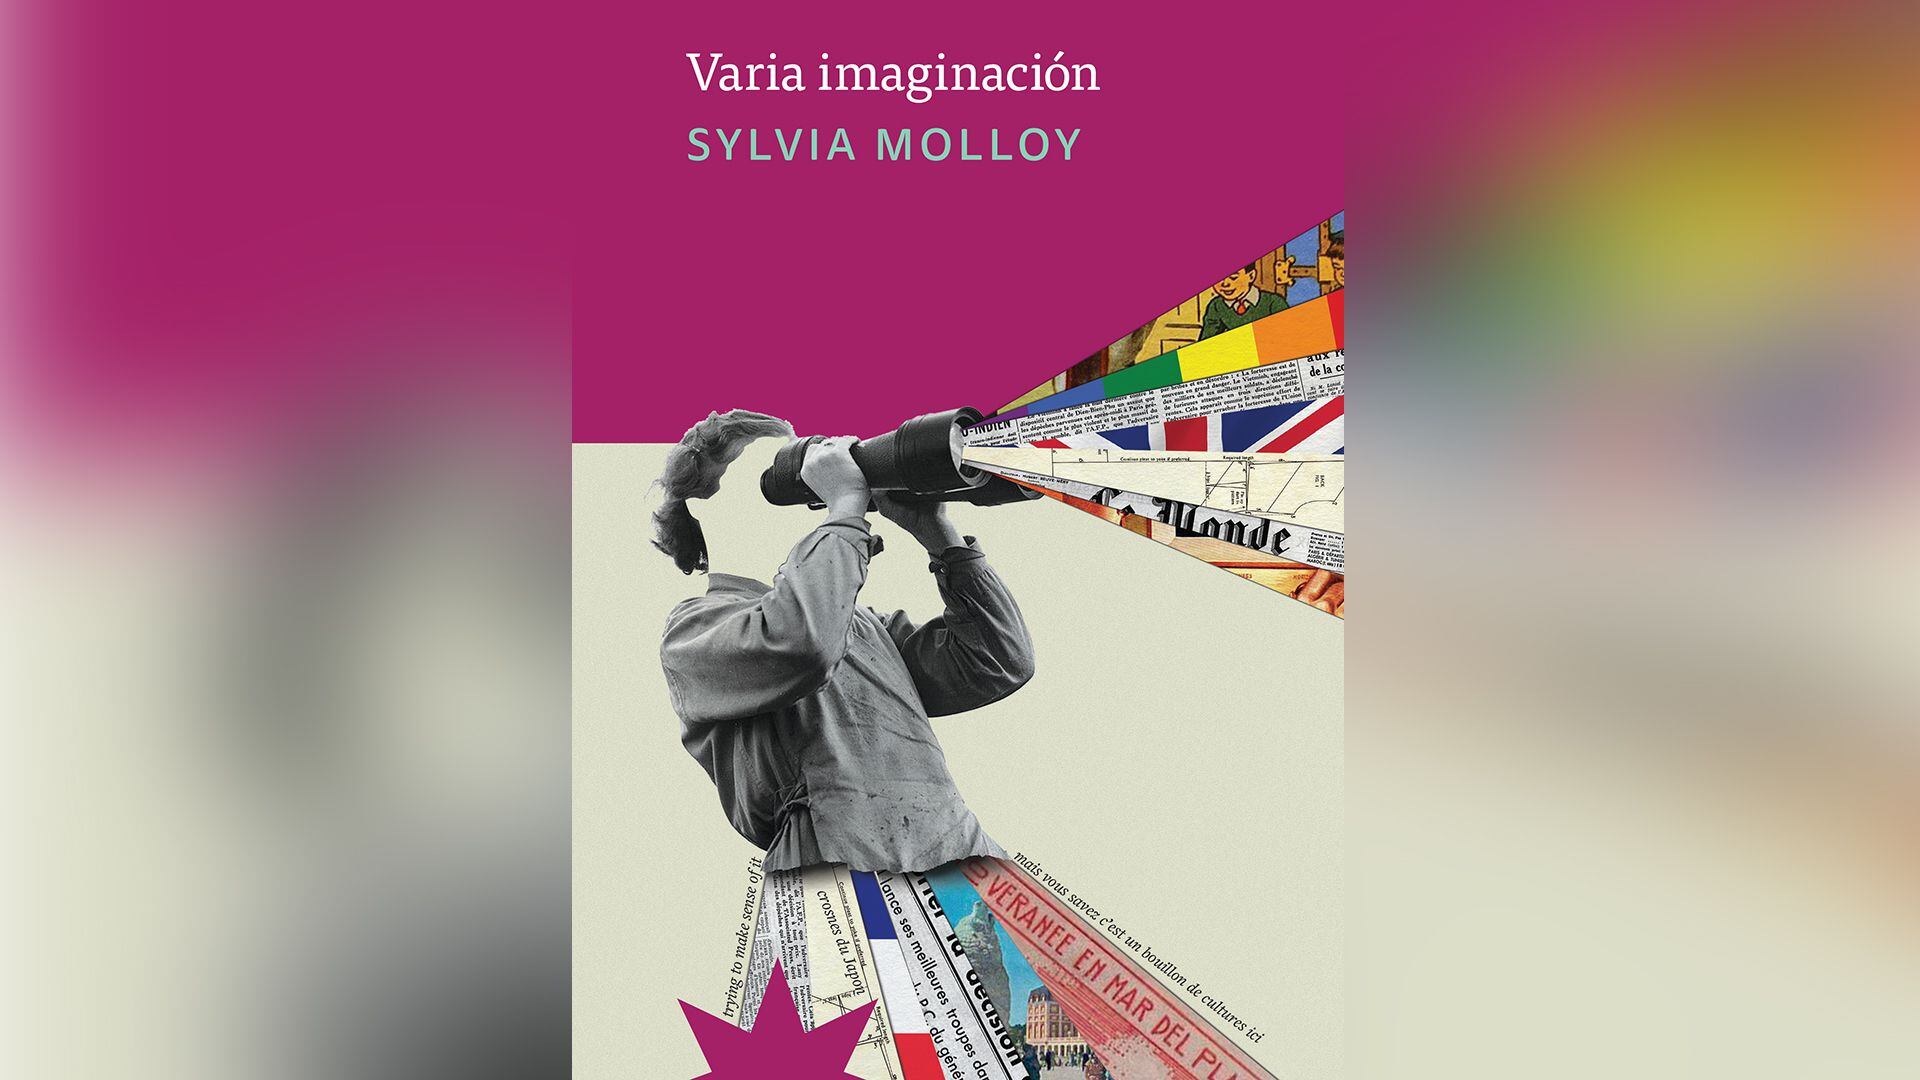 "Varia imaginación", su último libro